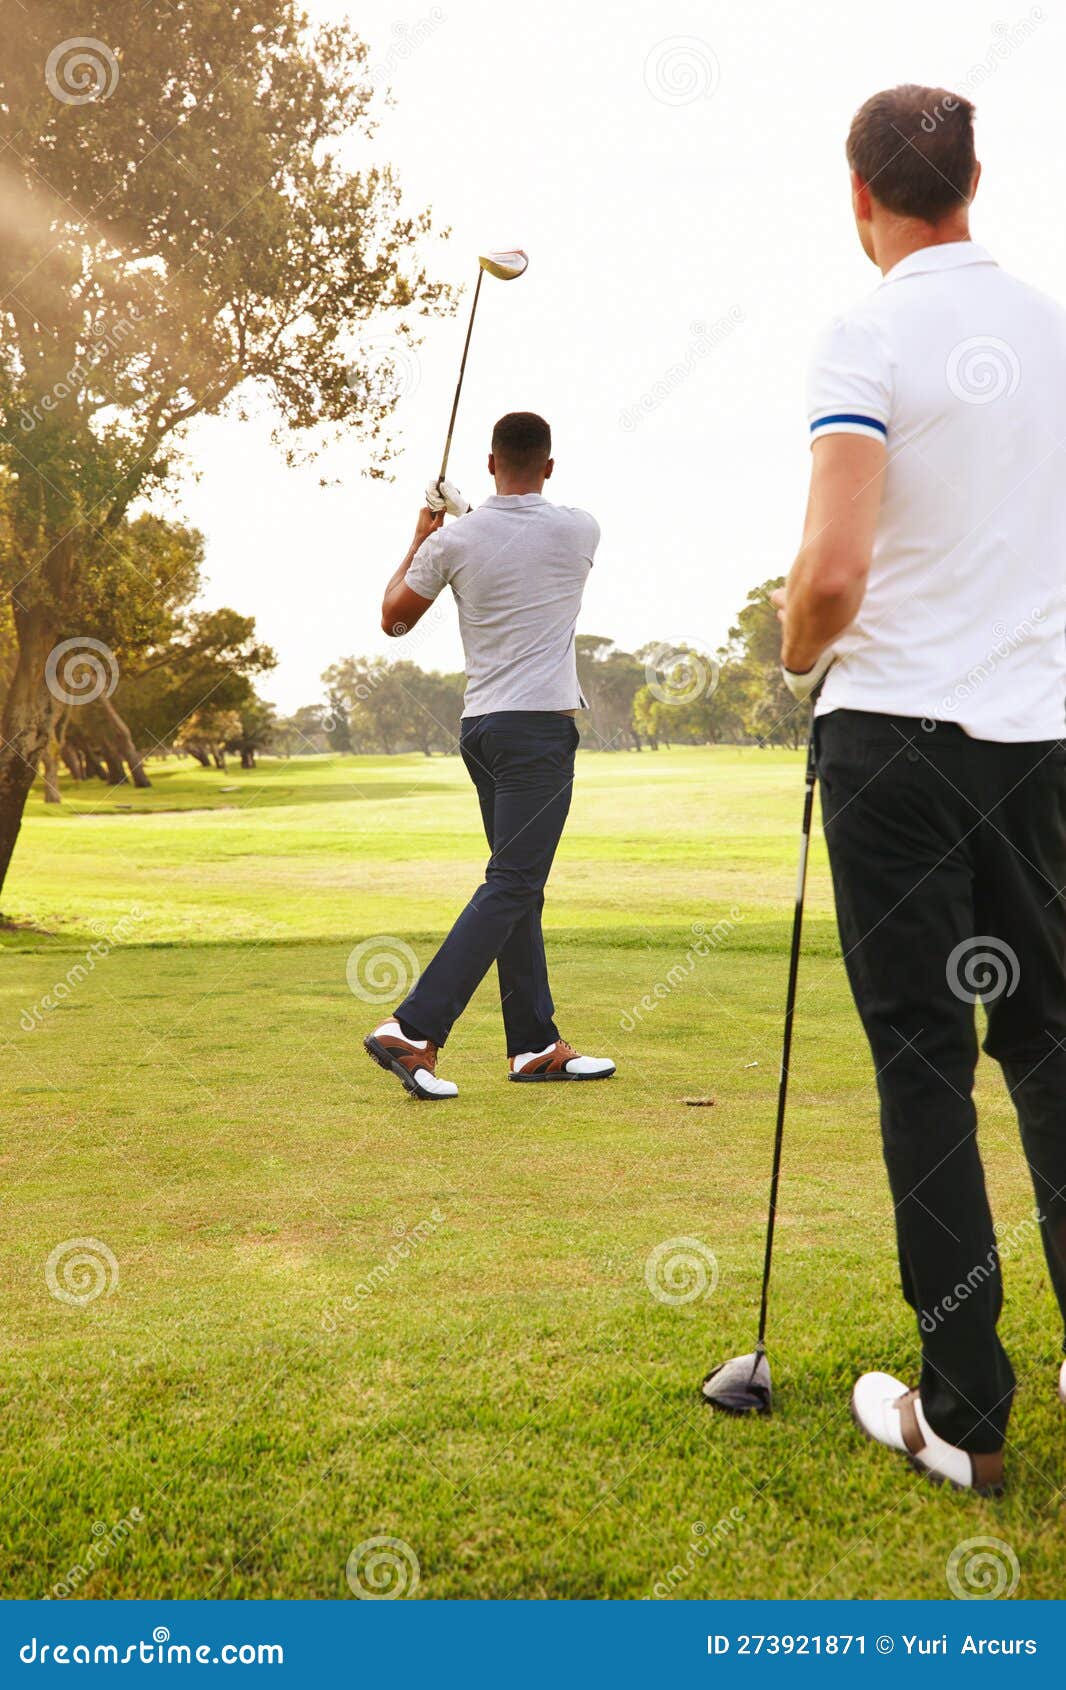 Bater No Carro Dos Sonhos. Tiro Na Retaguarda De Dois Homens Jogando Um Jogo  De Golfe. Imagem de Stock - Imagem de dirigir, homens: 273921871